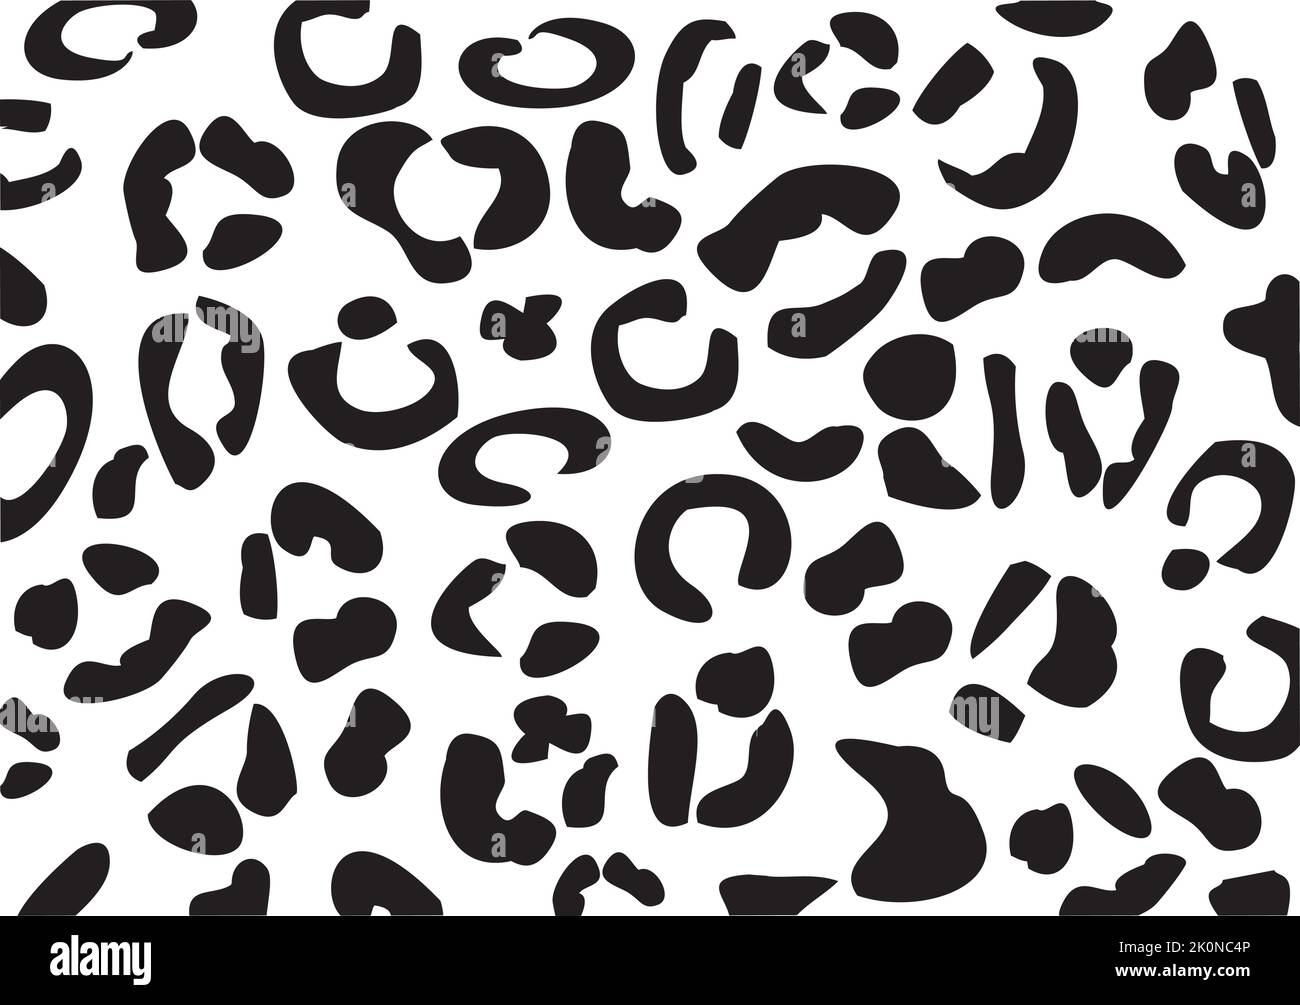 Leopardenmuster. Die nahtlose Vektor drucken. Realistische Tier Textur.  Schwarze und gelbe Flecken auf einem beigen Hintergrund. Abstrakte, sich  wiederholendes Muster - Leopard Stock-Vektorgrafik - Alamy